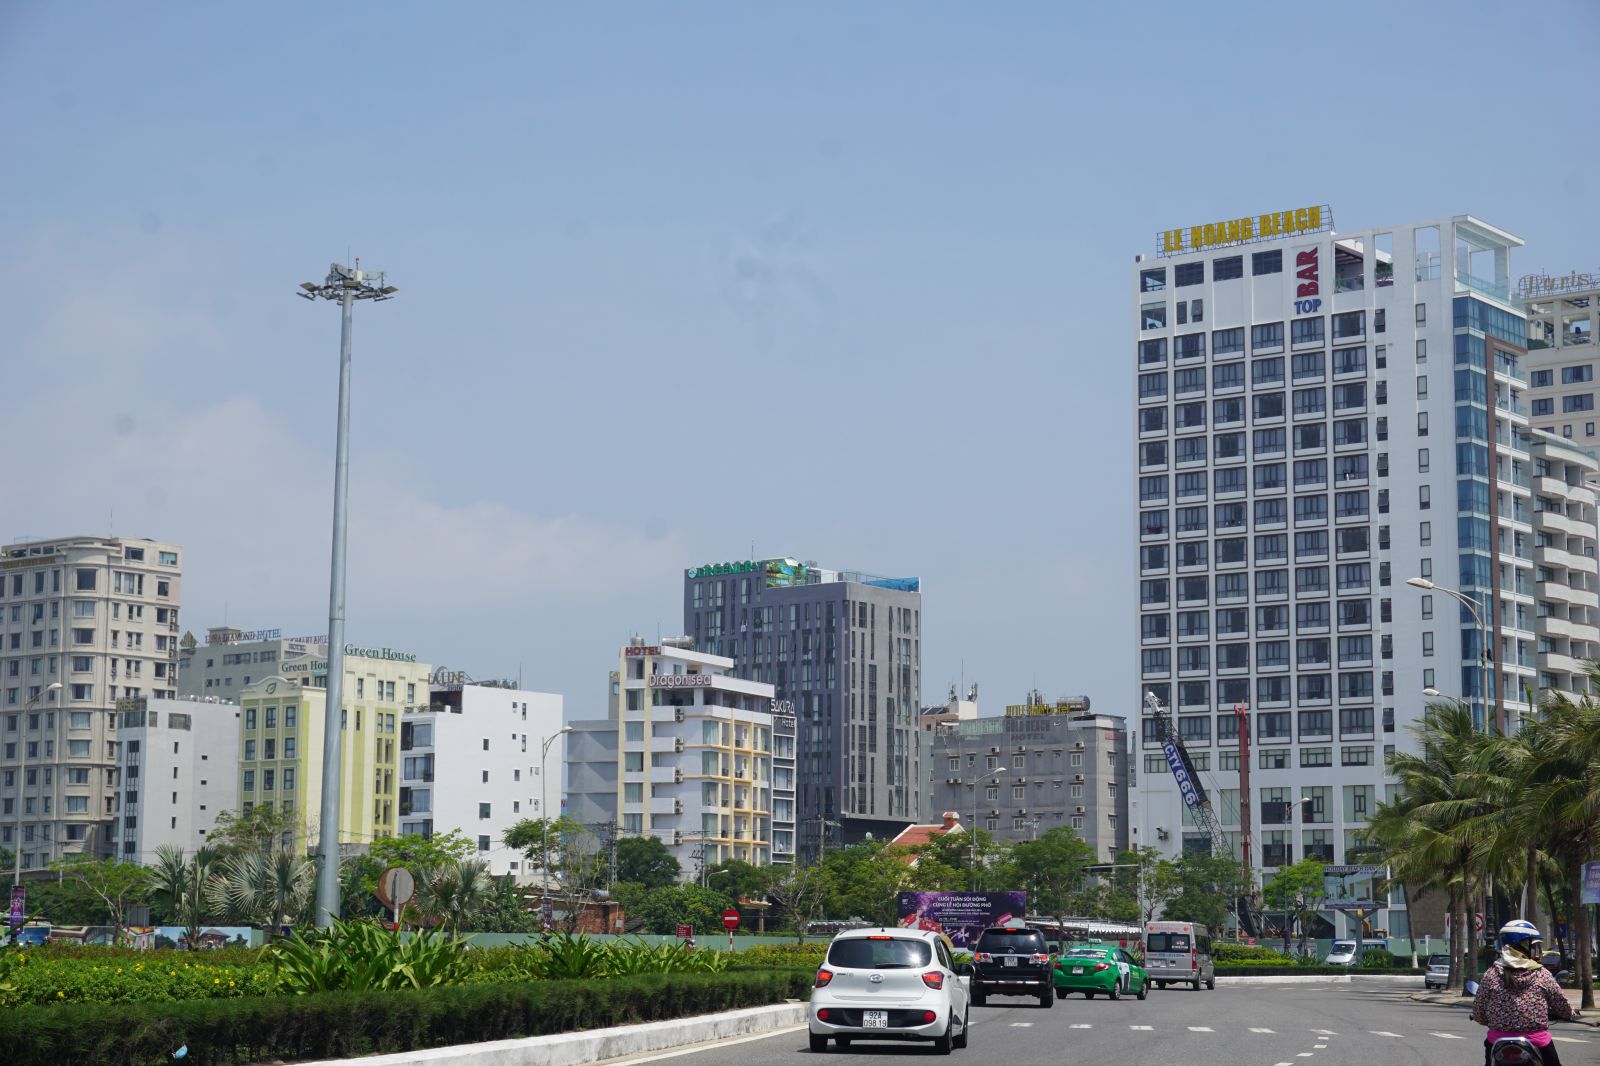 Khách sạn, cơ sở lưu trú du lịch tại Đà Nẵng được xây dựng ồ ạt những năm gần đây